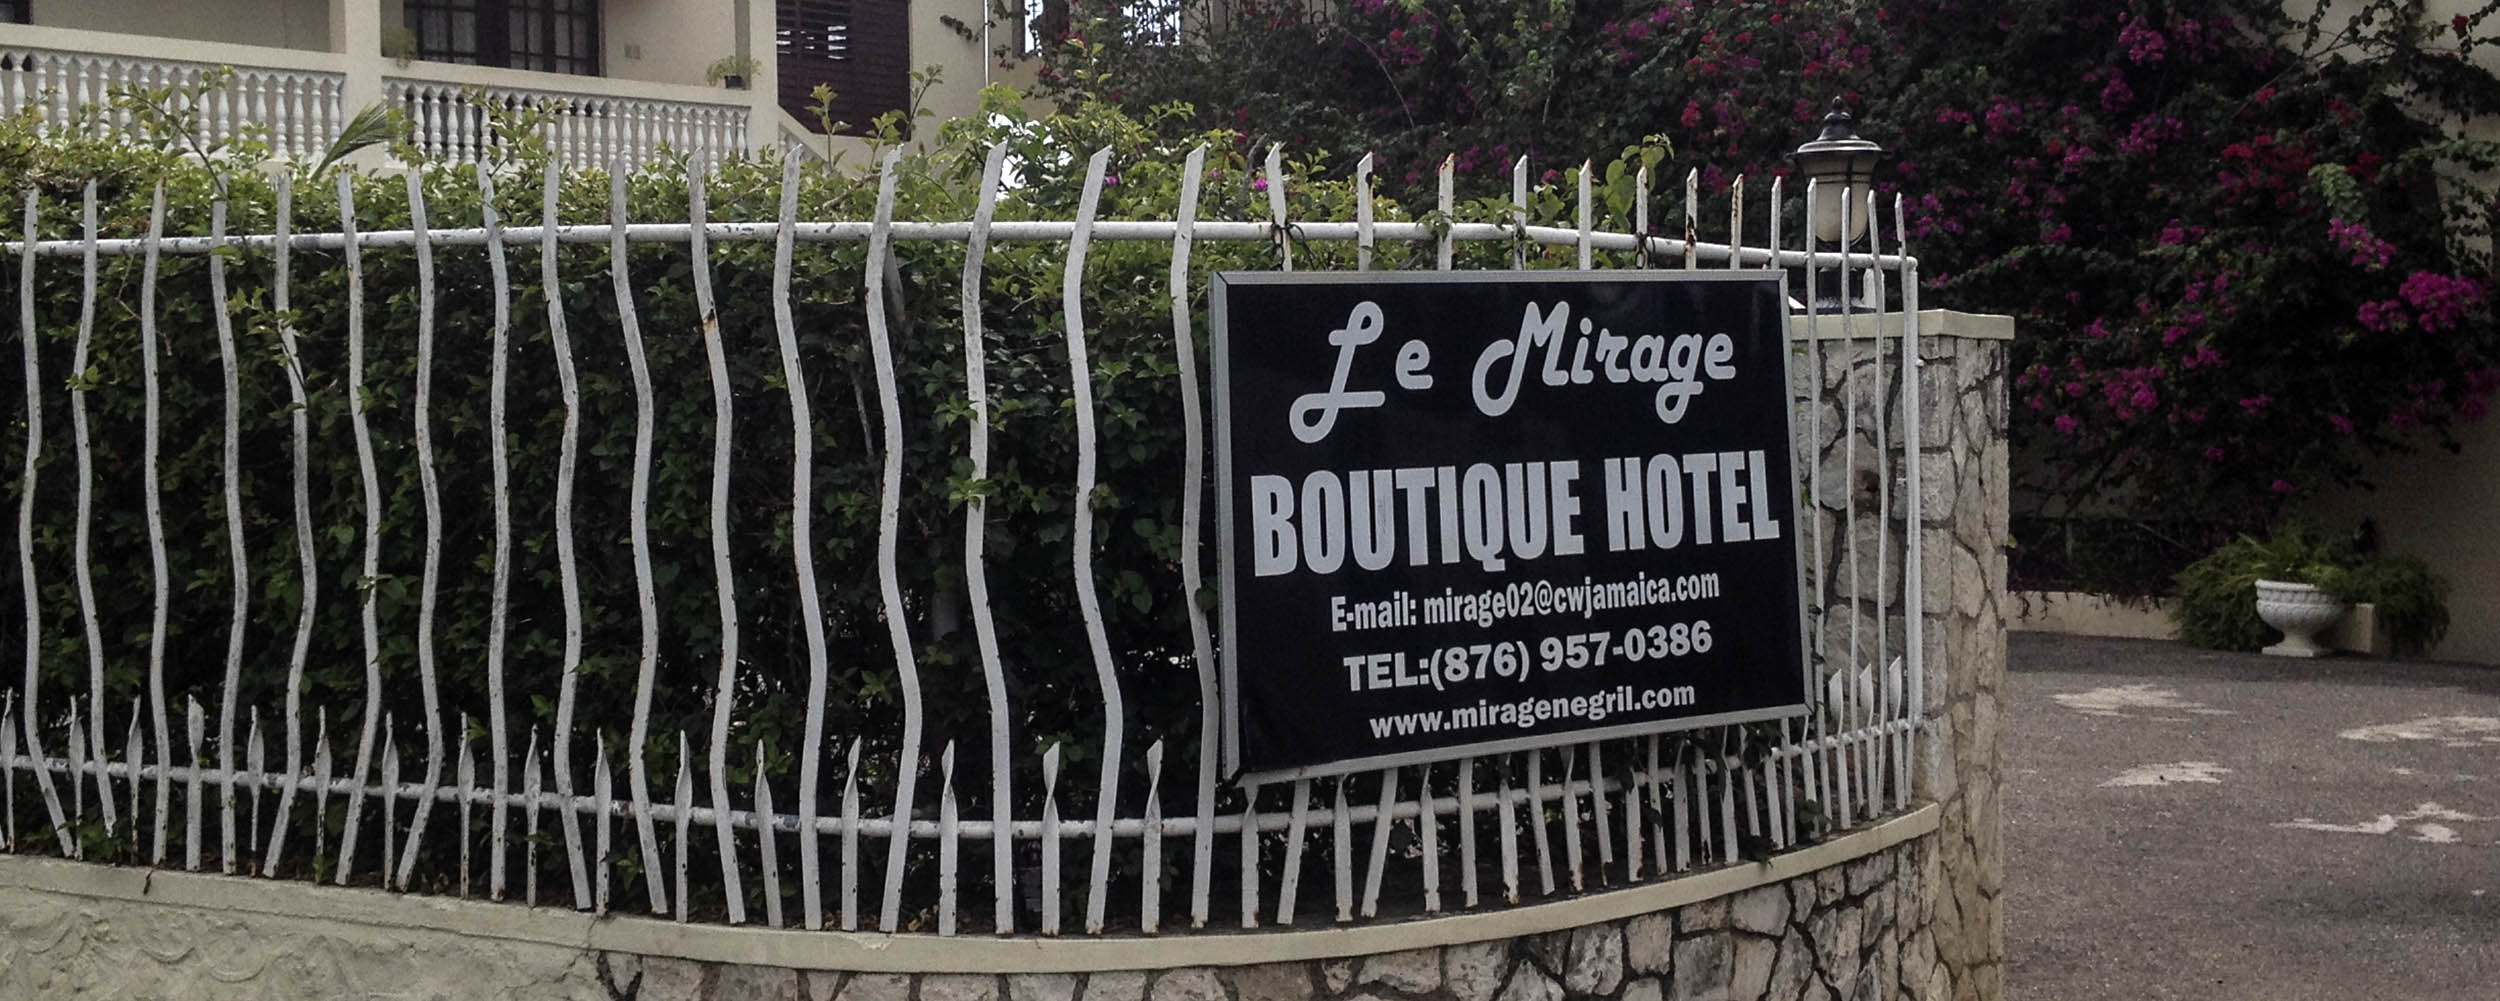 Le Mirage Boutique Hotel - Negril Jamaica